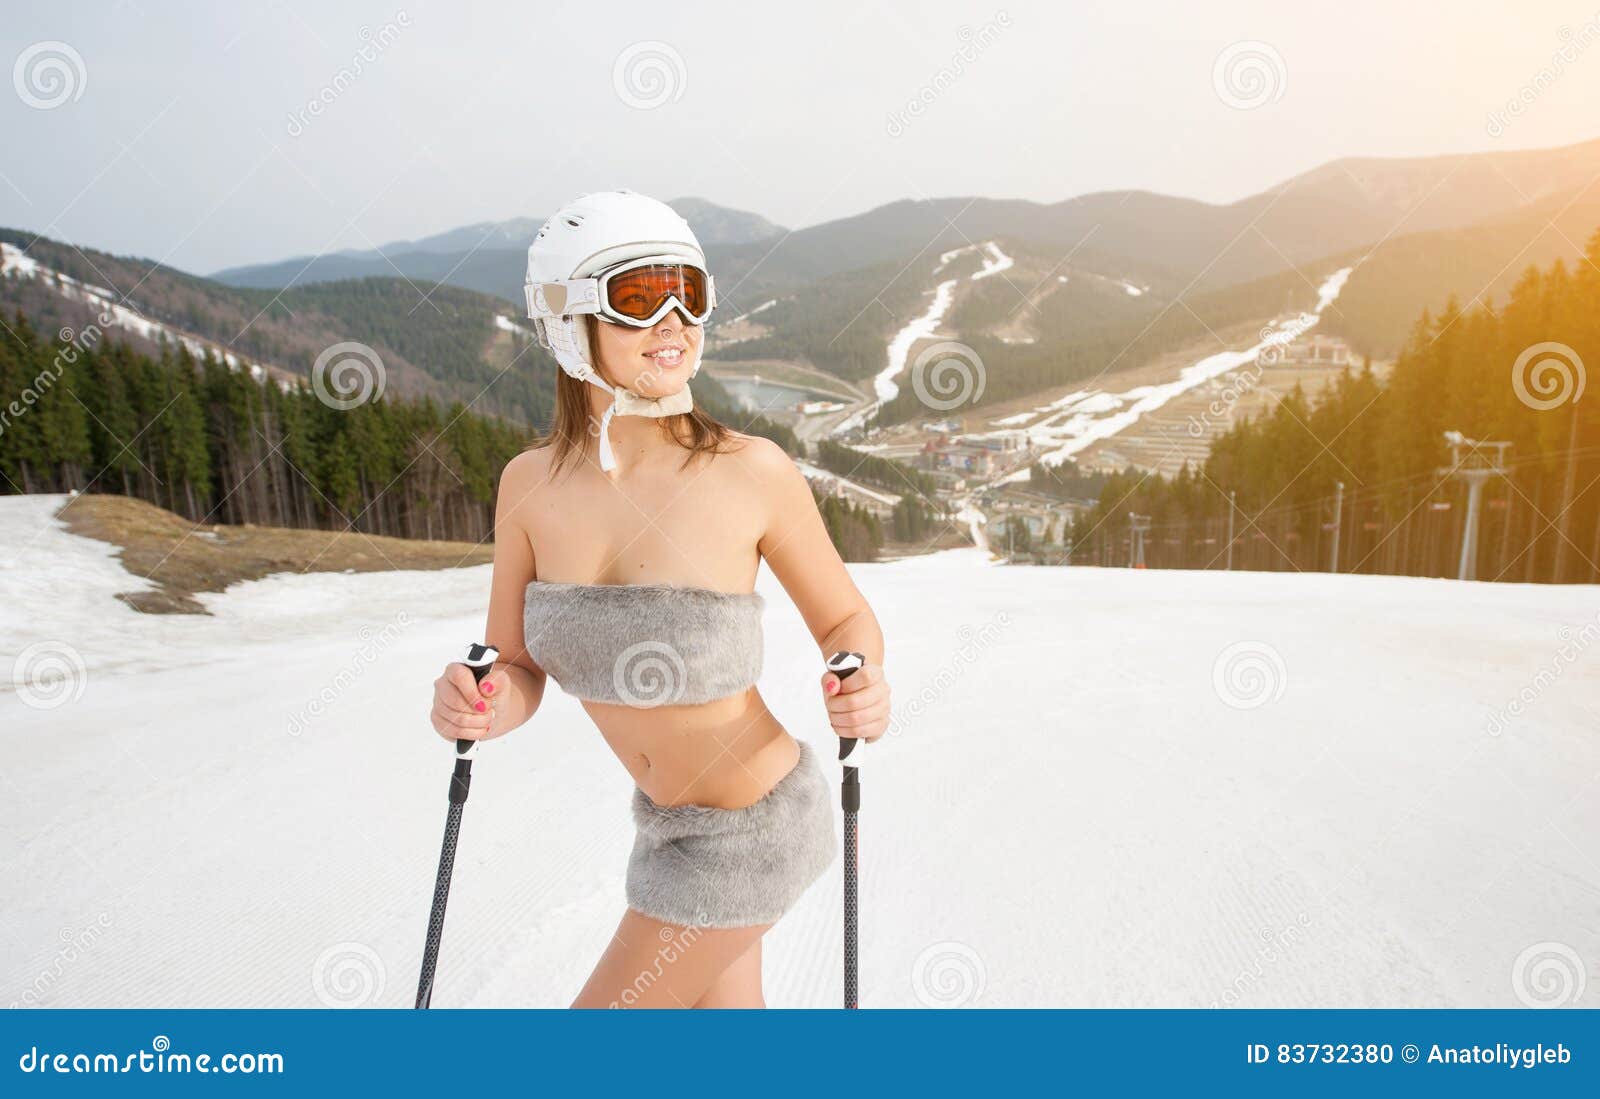 Naked Skiing Female 27